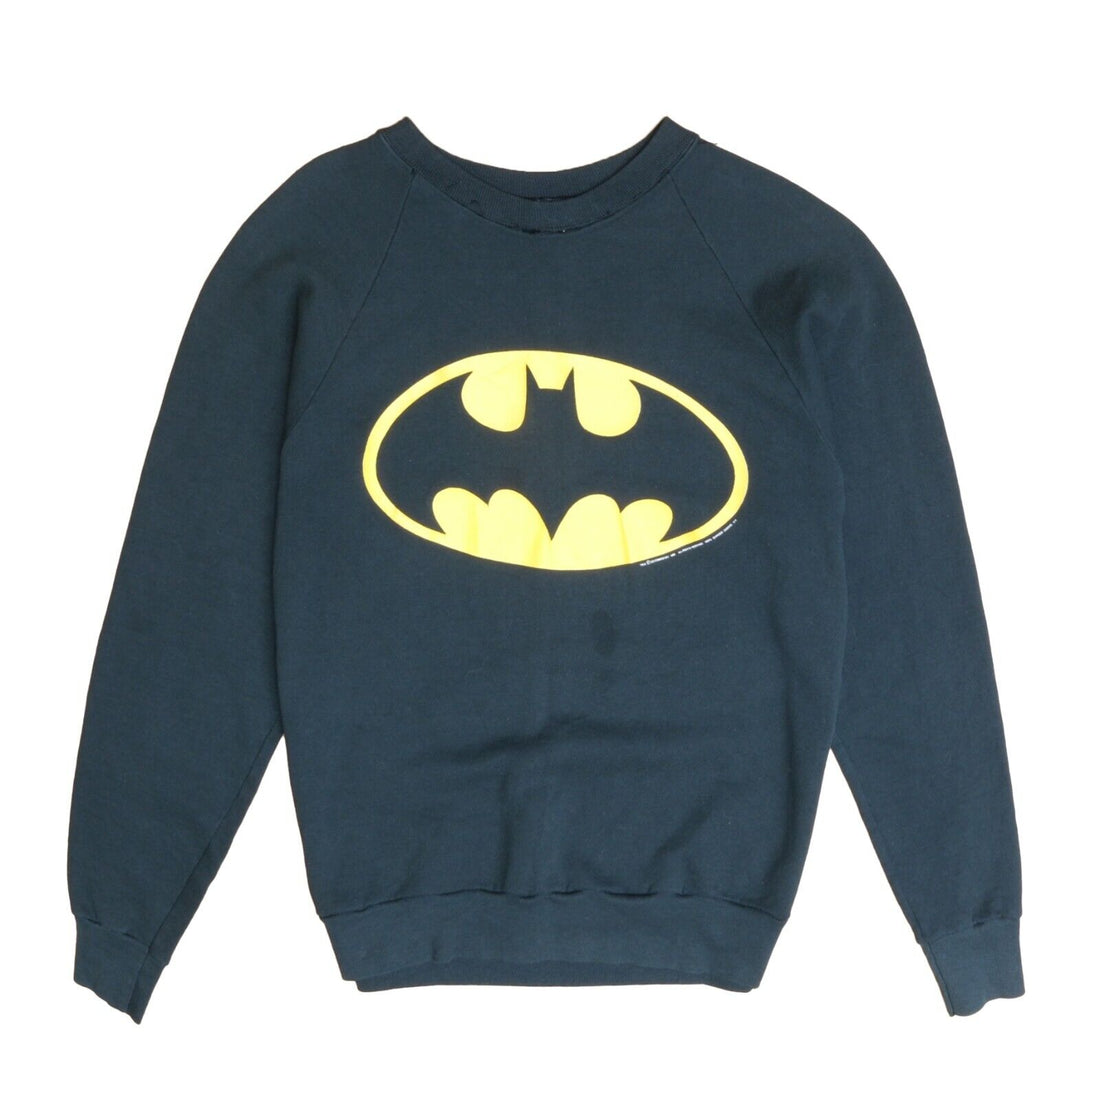 Vintage Batman DC Comics Sweatshirt Crewneck Size Large 80s 90s